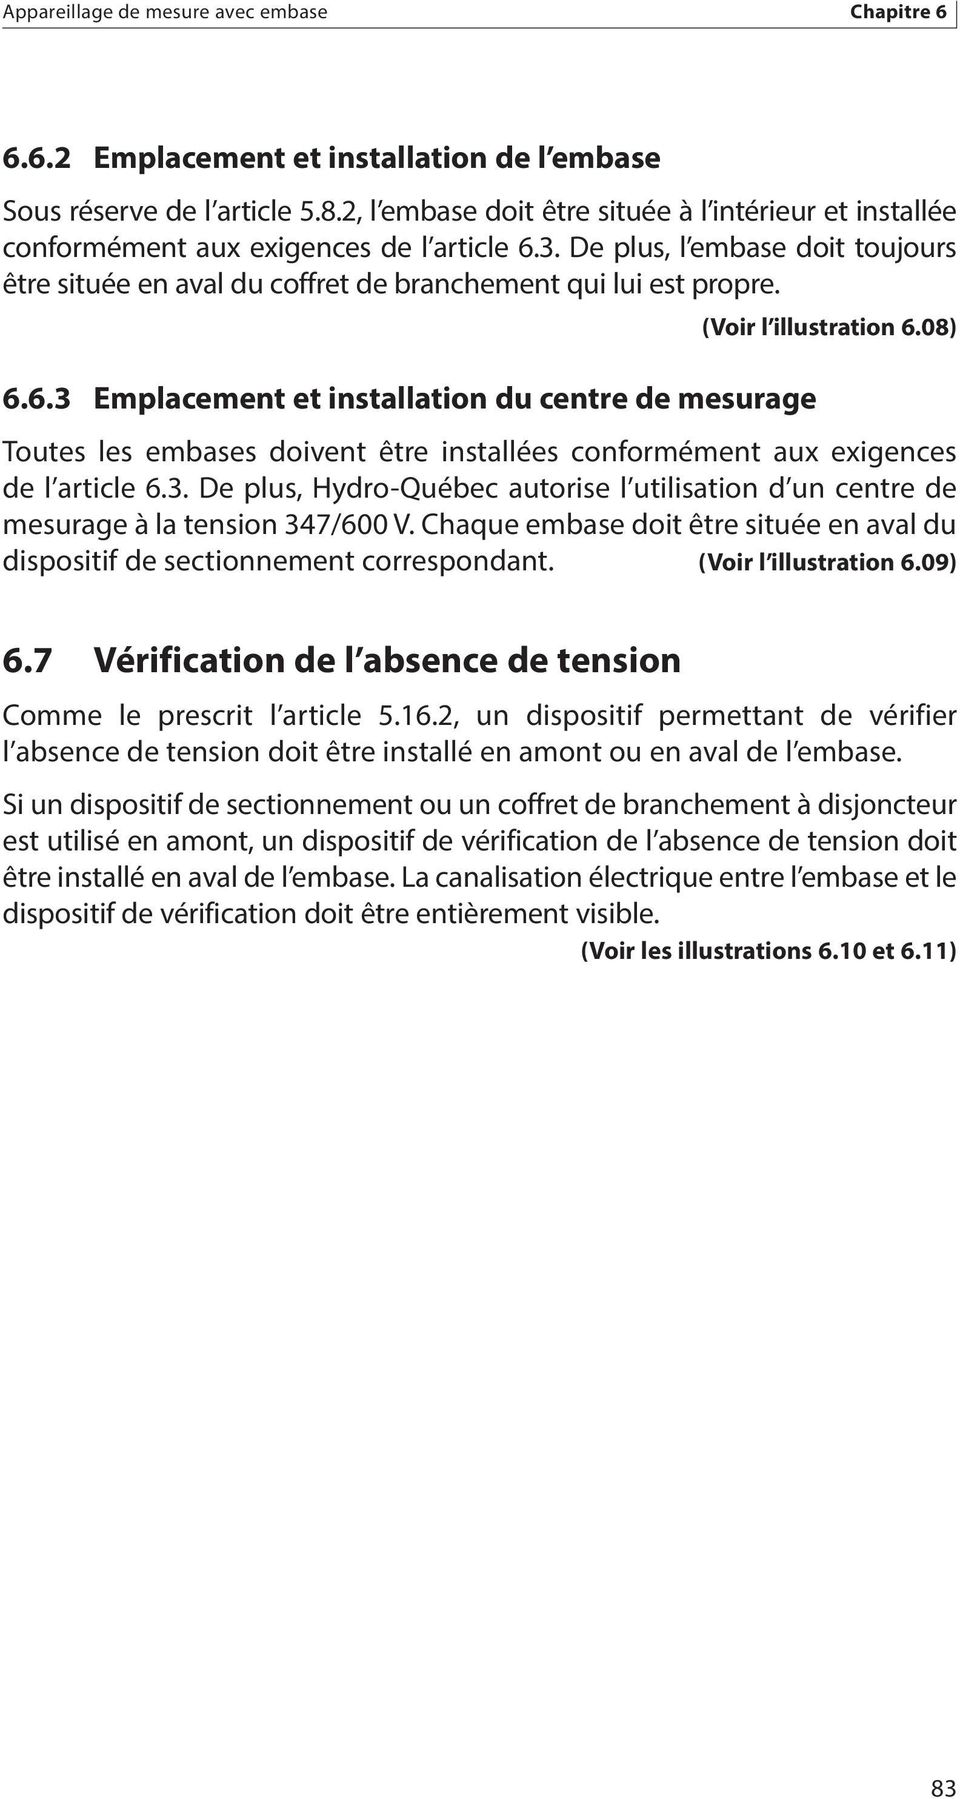 6.6.3 Emplacement et installation du centre de mesurage (Voir l illustration 6.08) Toutes les embases doivent être installées conformément aux exigences de l article 6.3. De plus, Hydro-Québec autorise l utilisation d un centre de mesurage à la tension 347/600 V.